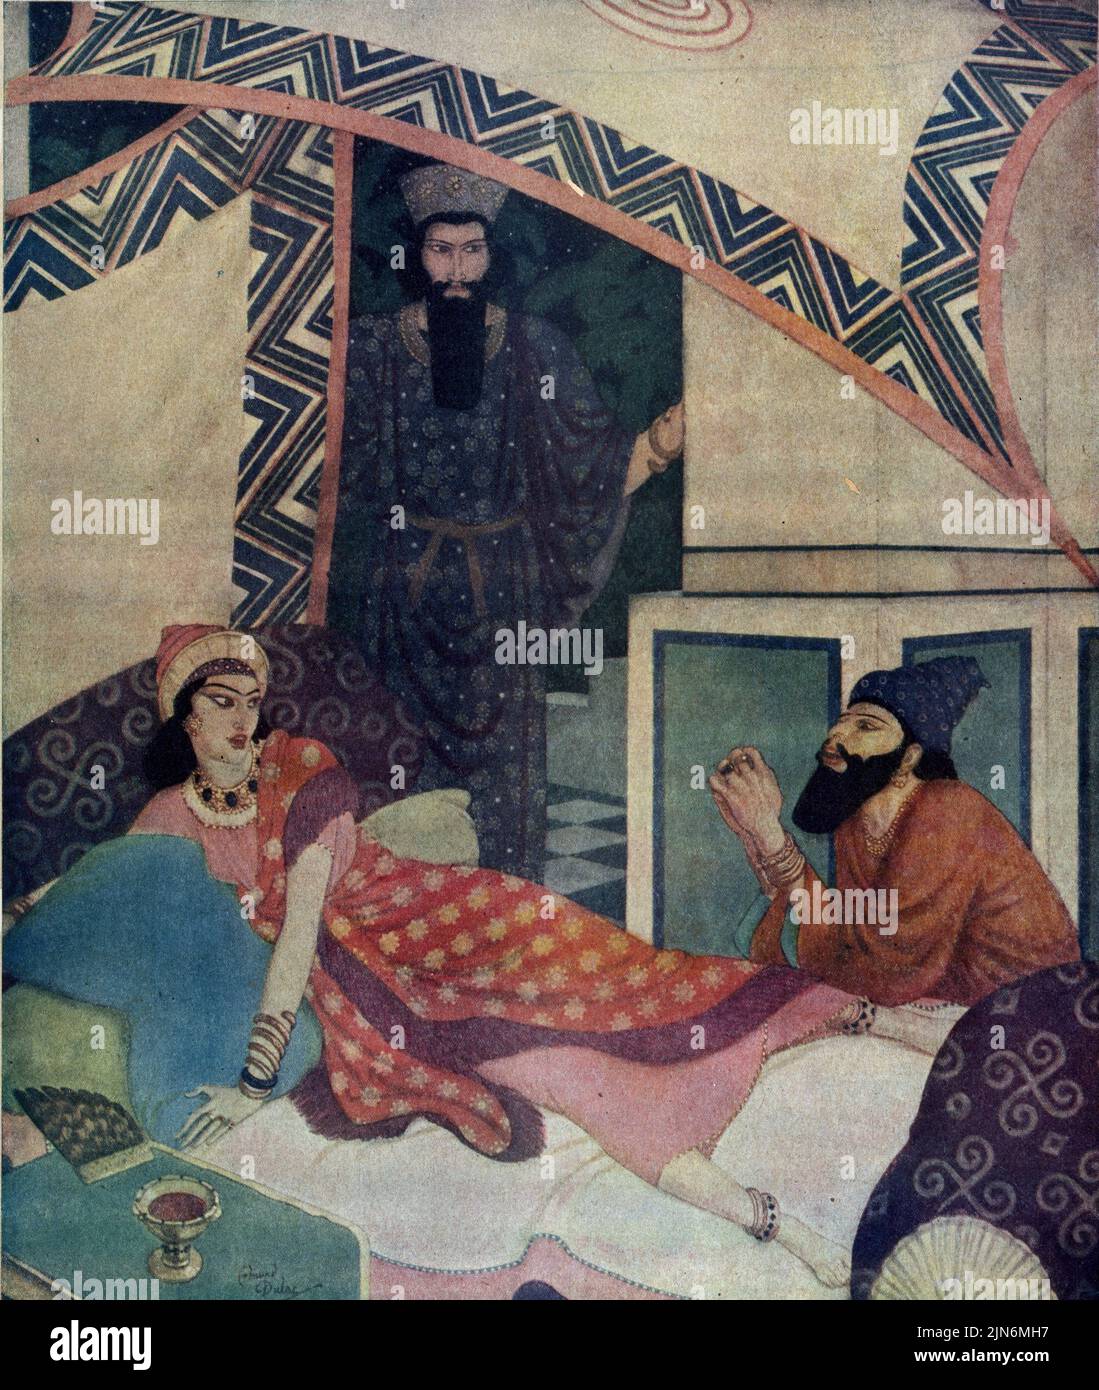 « Queen Ester and Haman » a publié 21 décembre, 1924 dans le magazine American Weekly Sunday peint par Edmund Dulac dans la série scènes bibliques et héros. Banque D'Images